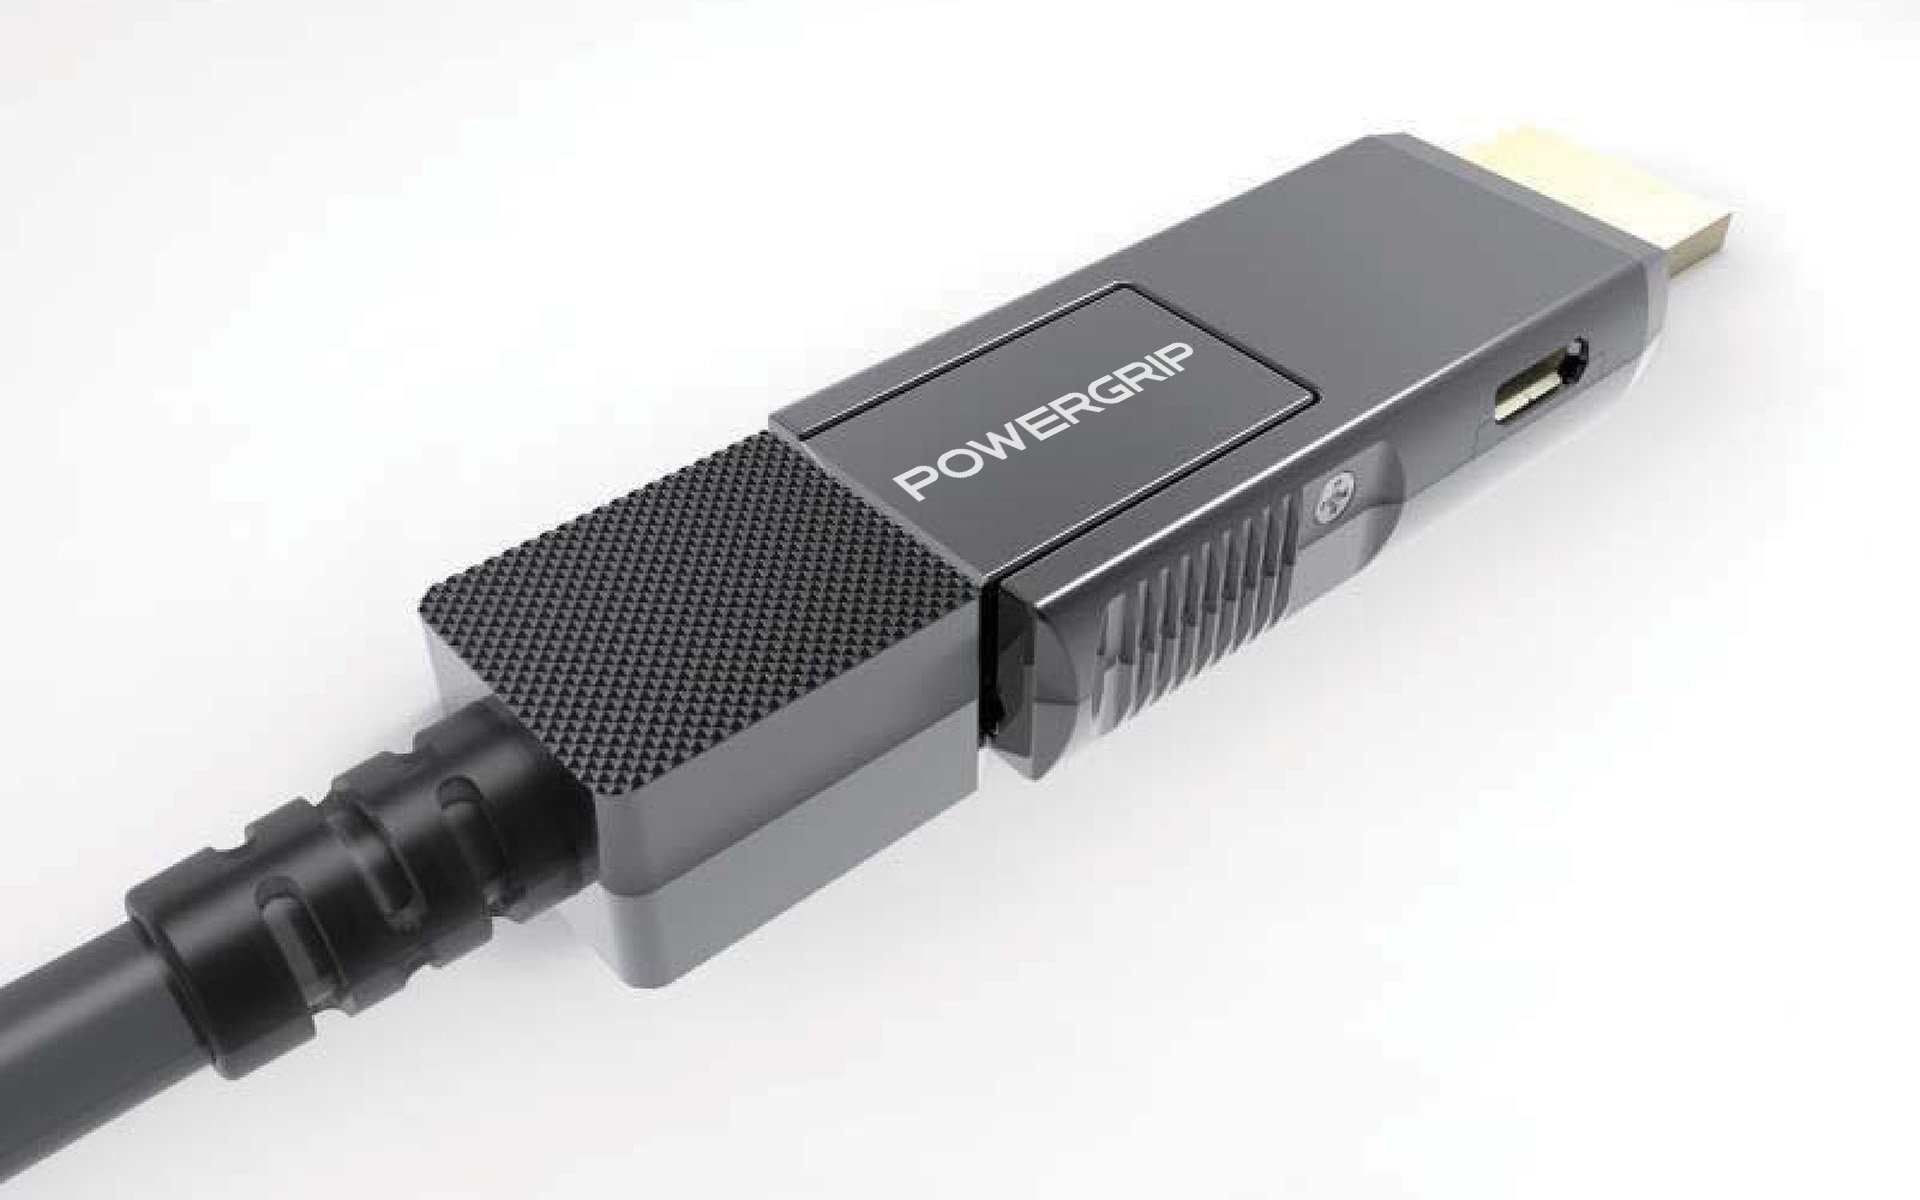 Активный бронированный HDMI-кабель POWERGRIP Visionary: передача сигнала HDMI 2.0b на расстояние до 100 метров